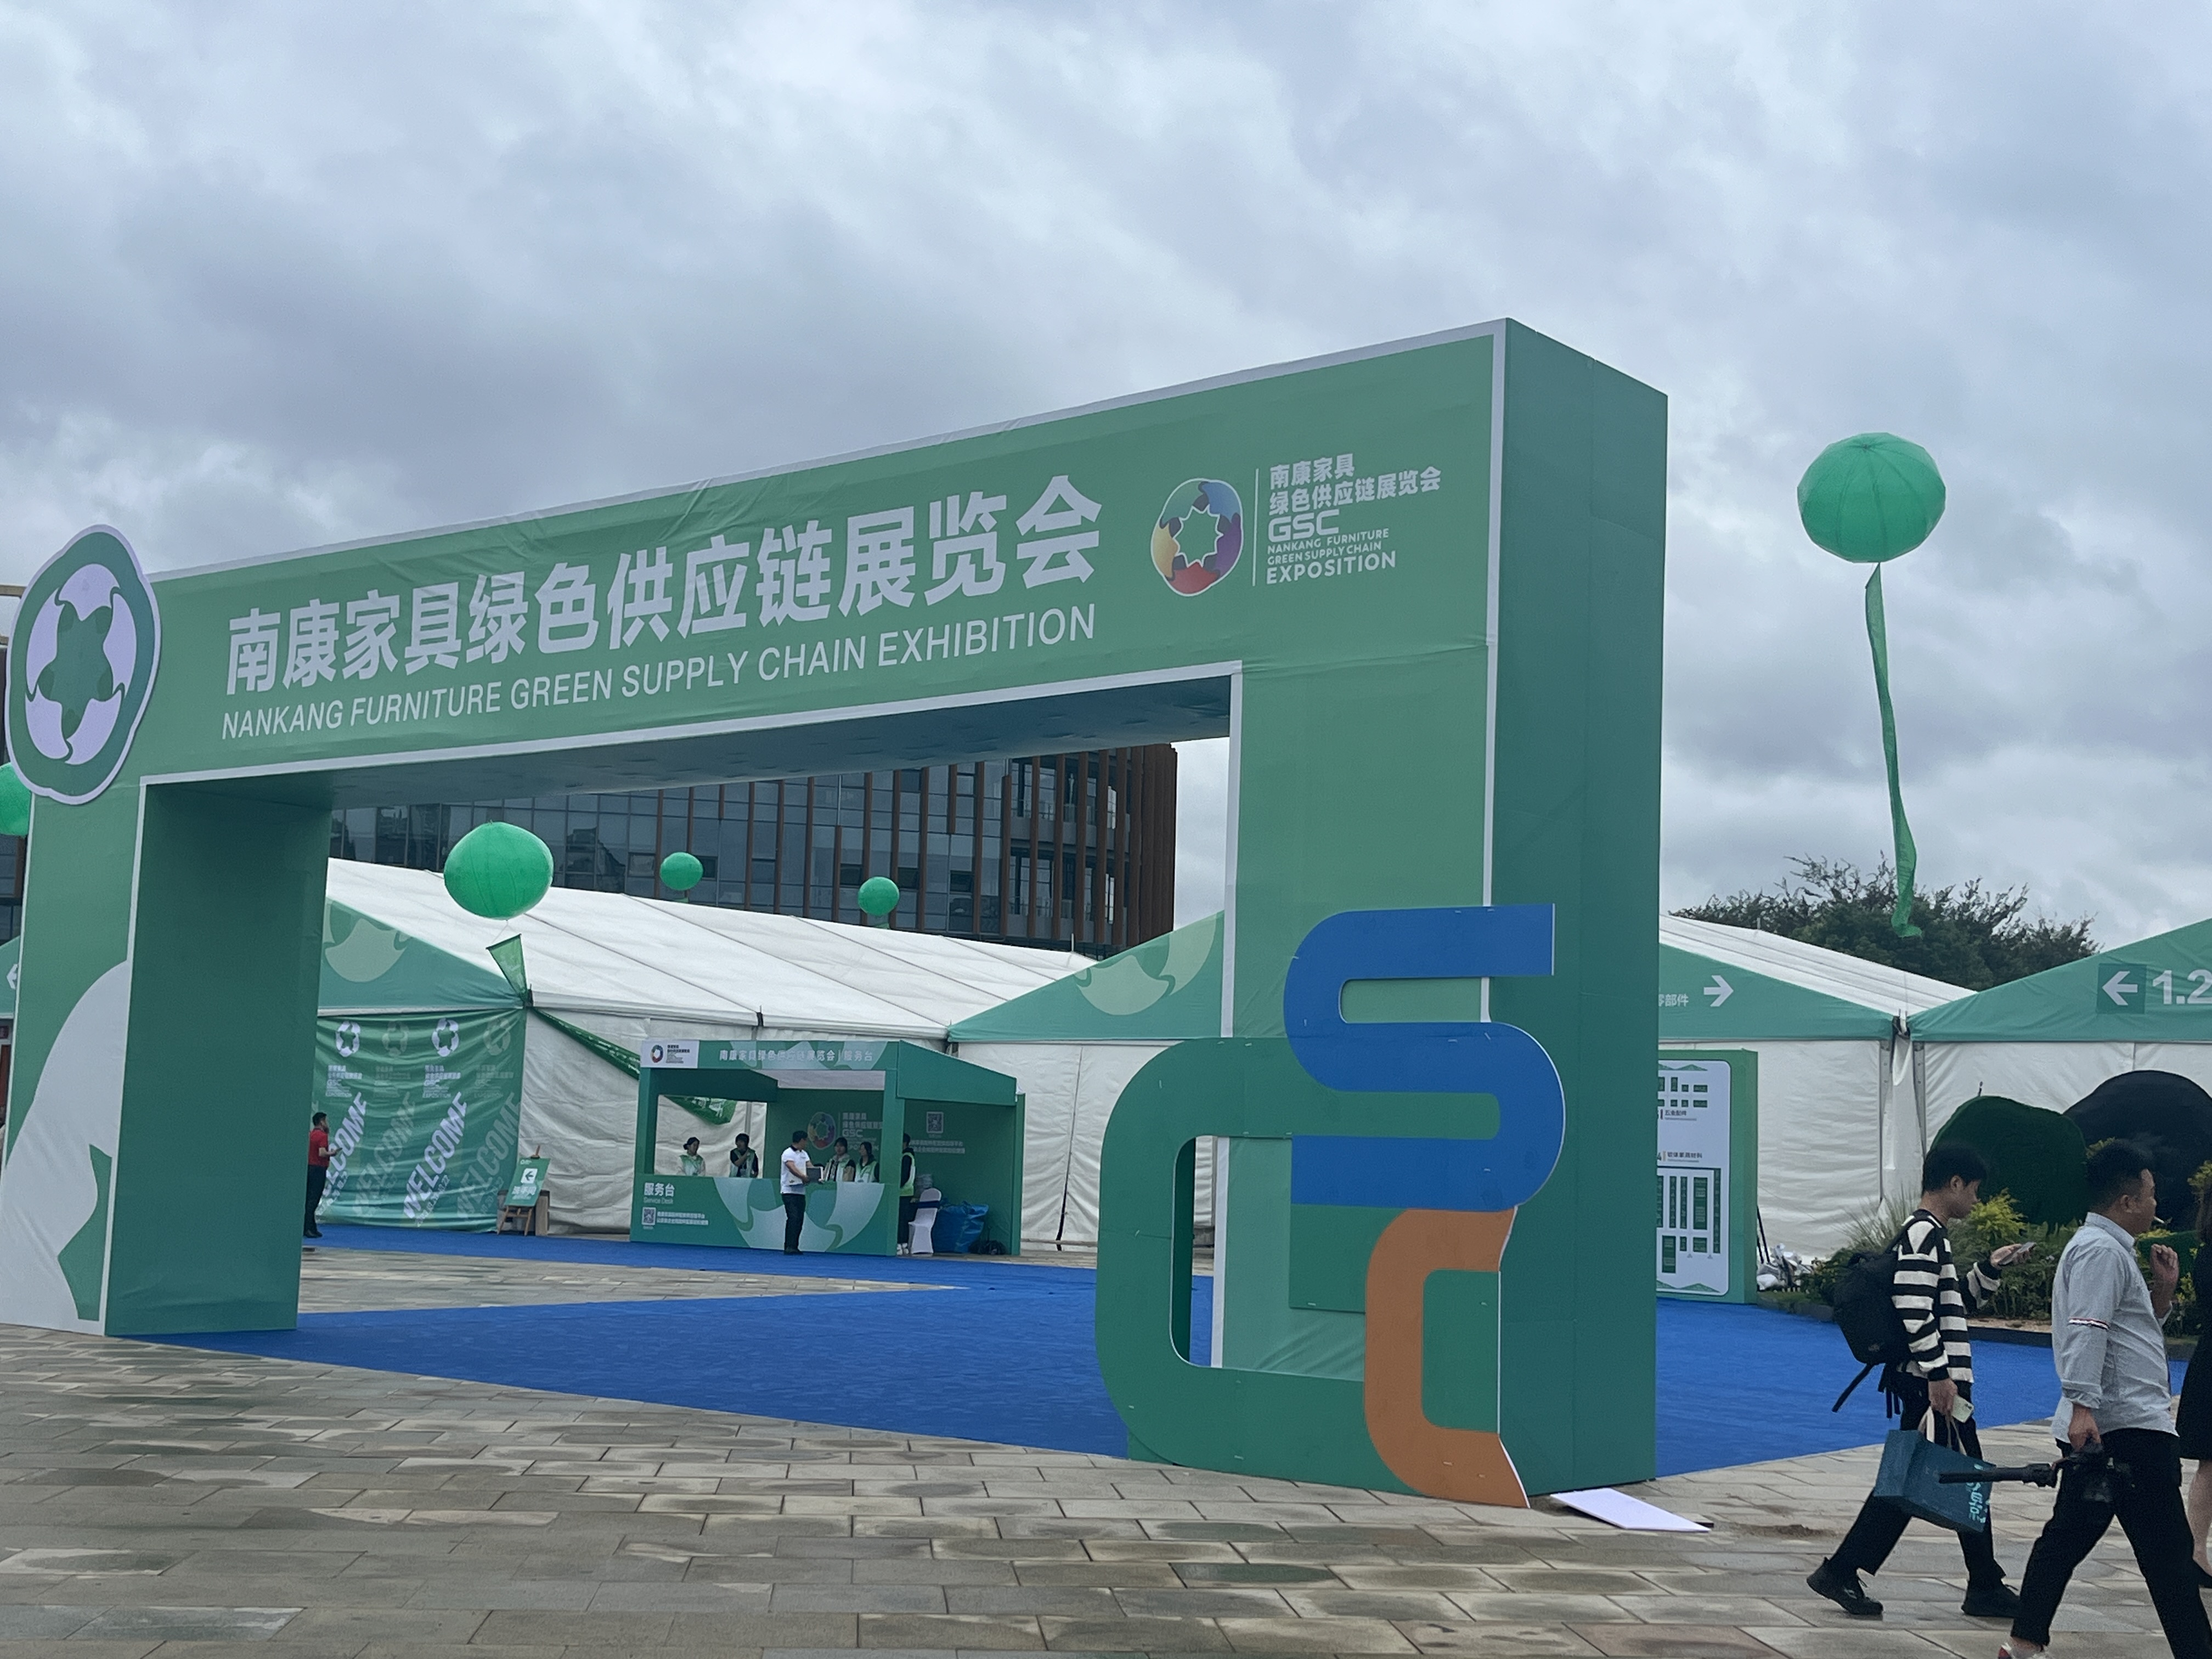 C7集团中国股份有限公司官网股份参加首届南康家具绿色供应链展览会